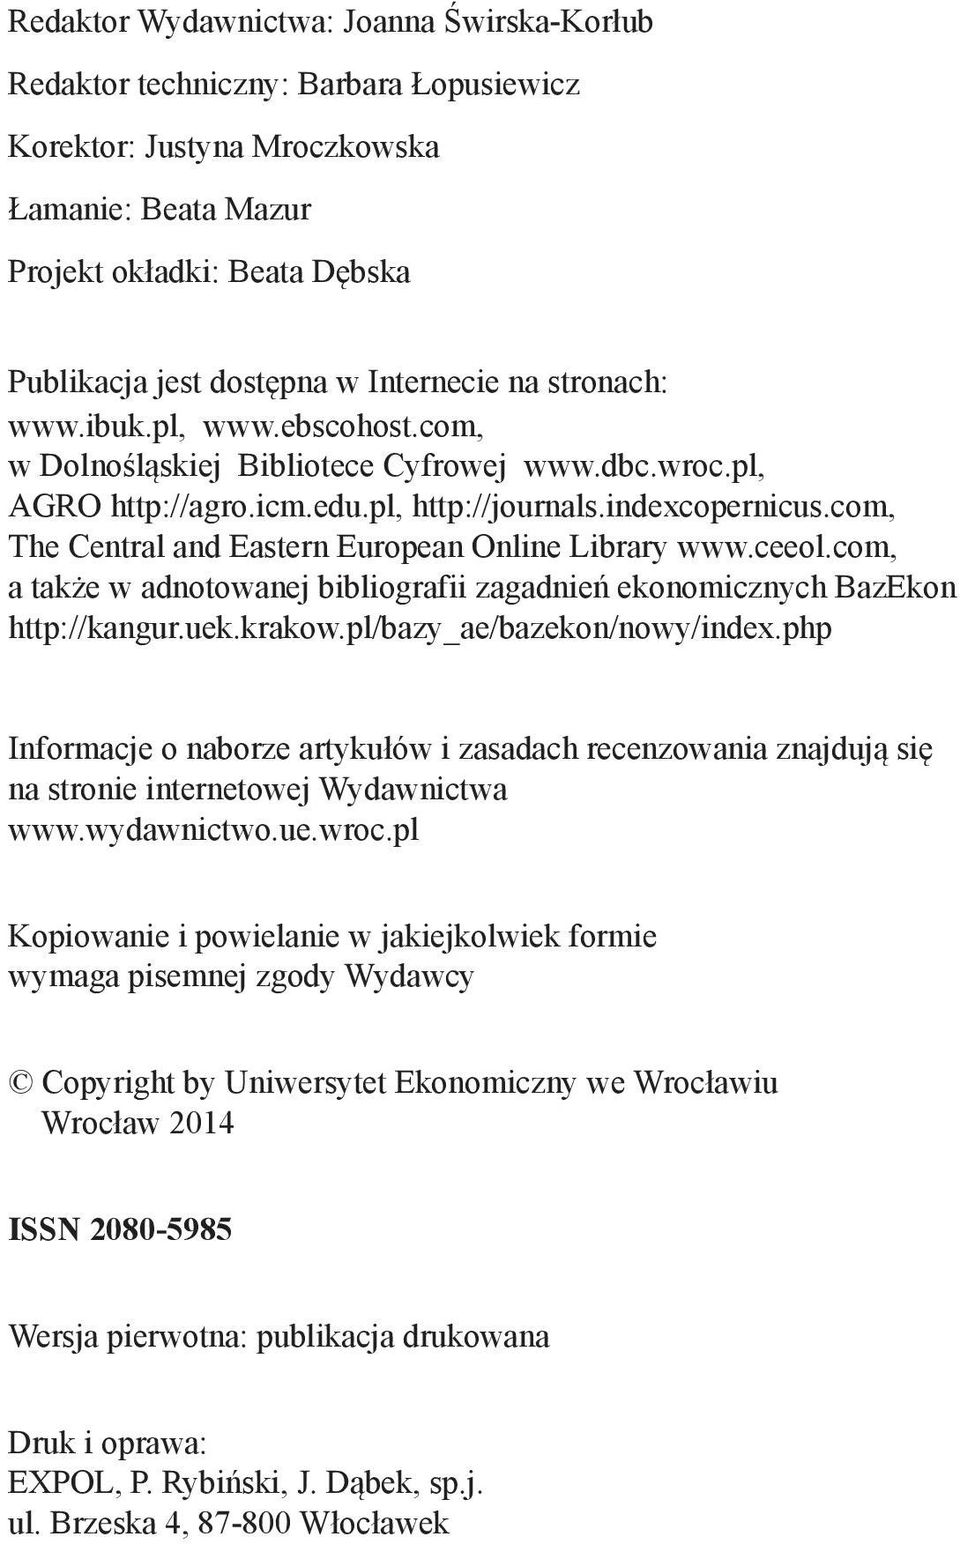 com, The Central and Eastern European Online Library www.ceeol.com, a także w adnotowanej bibliografii zagadnień ekonomicznych BazEkon http://kangur.uek.krakow.pl/bazy_ae/bazekon/nowy/index.